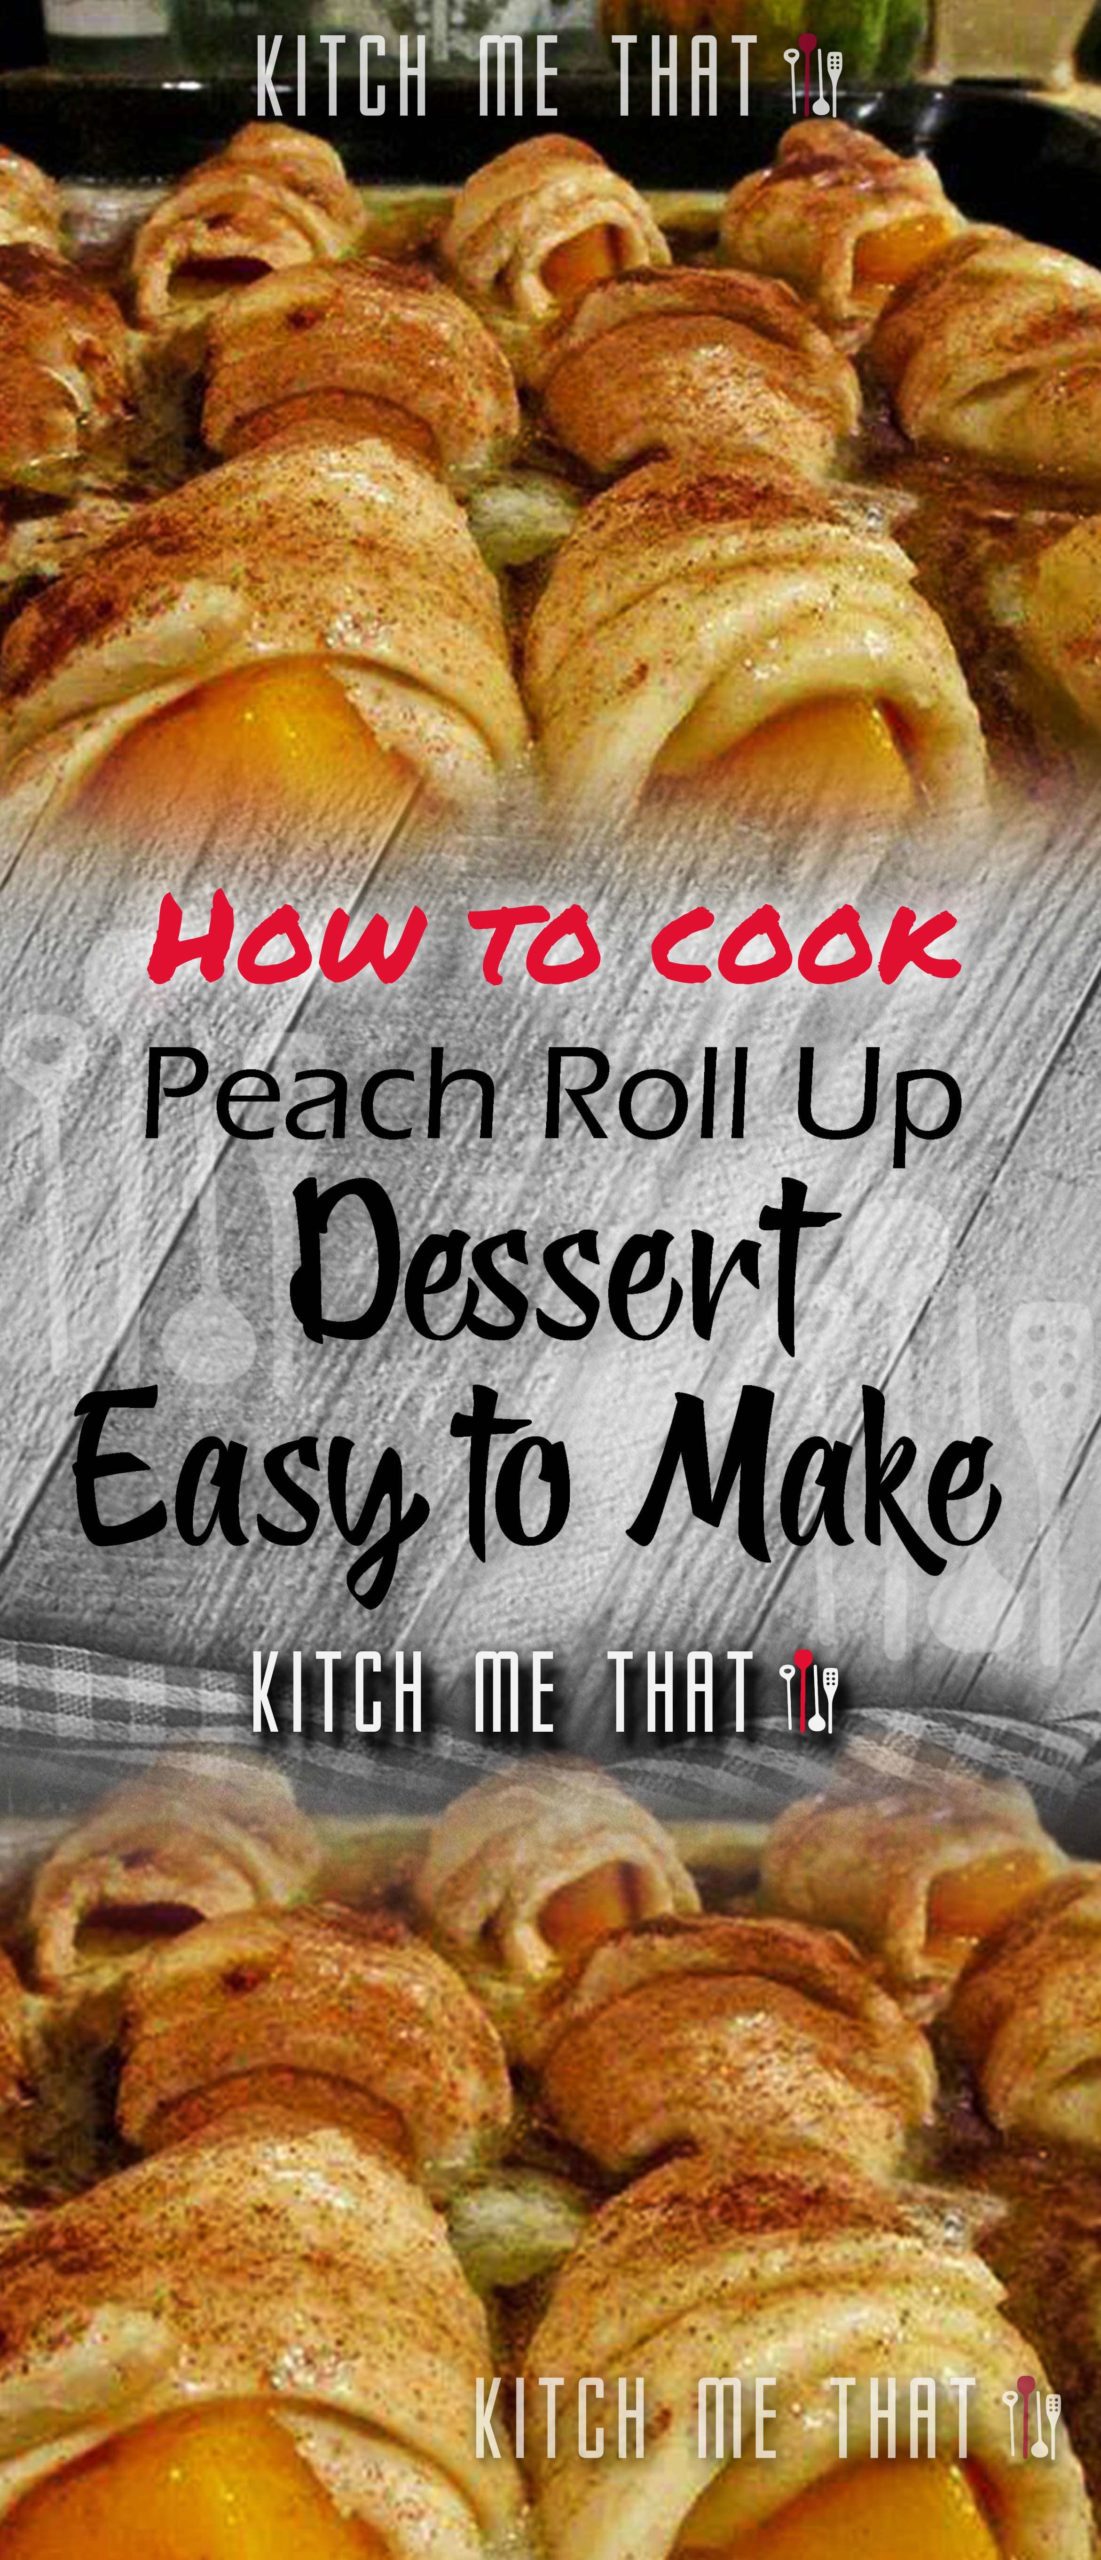 Peach Roll Up Dessert